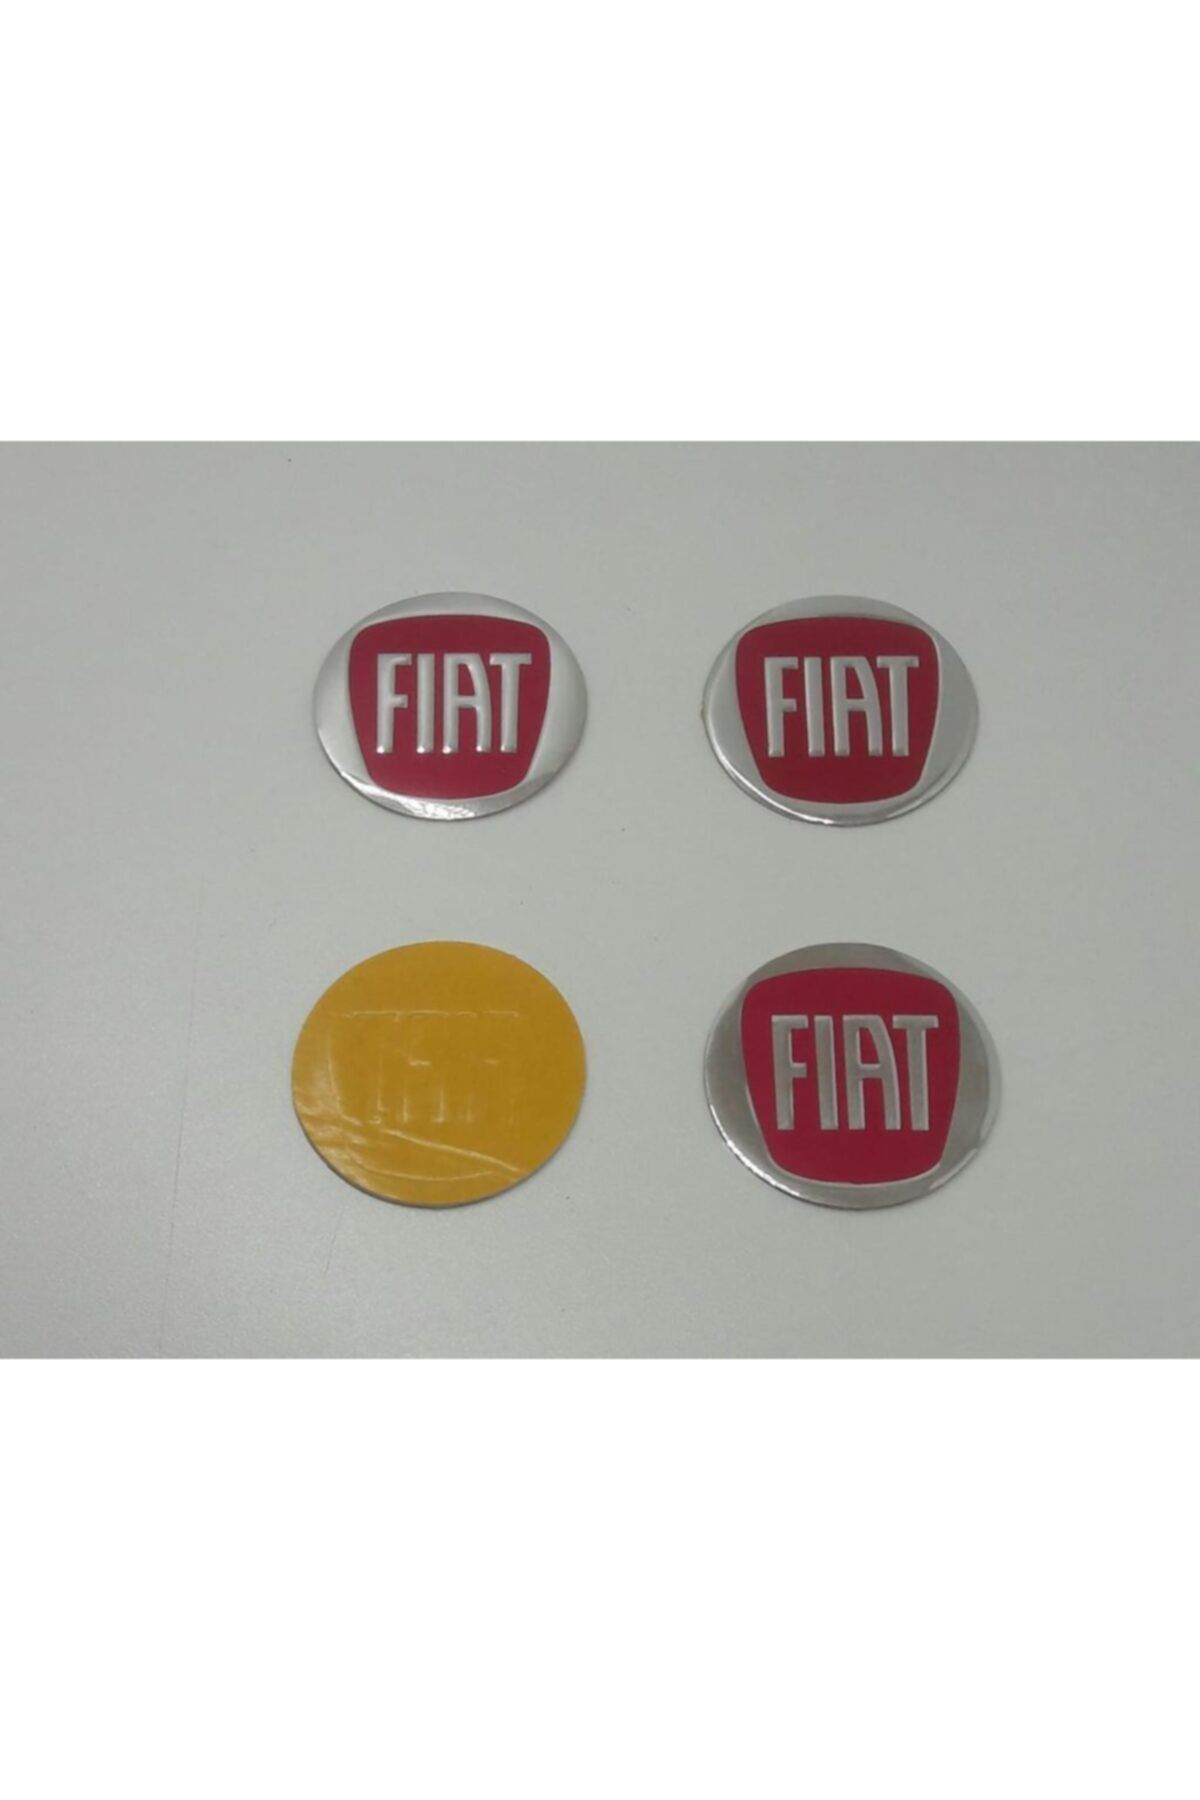 Fiat Jant Göbeği Etiketi 55mm Çap